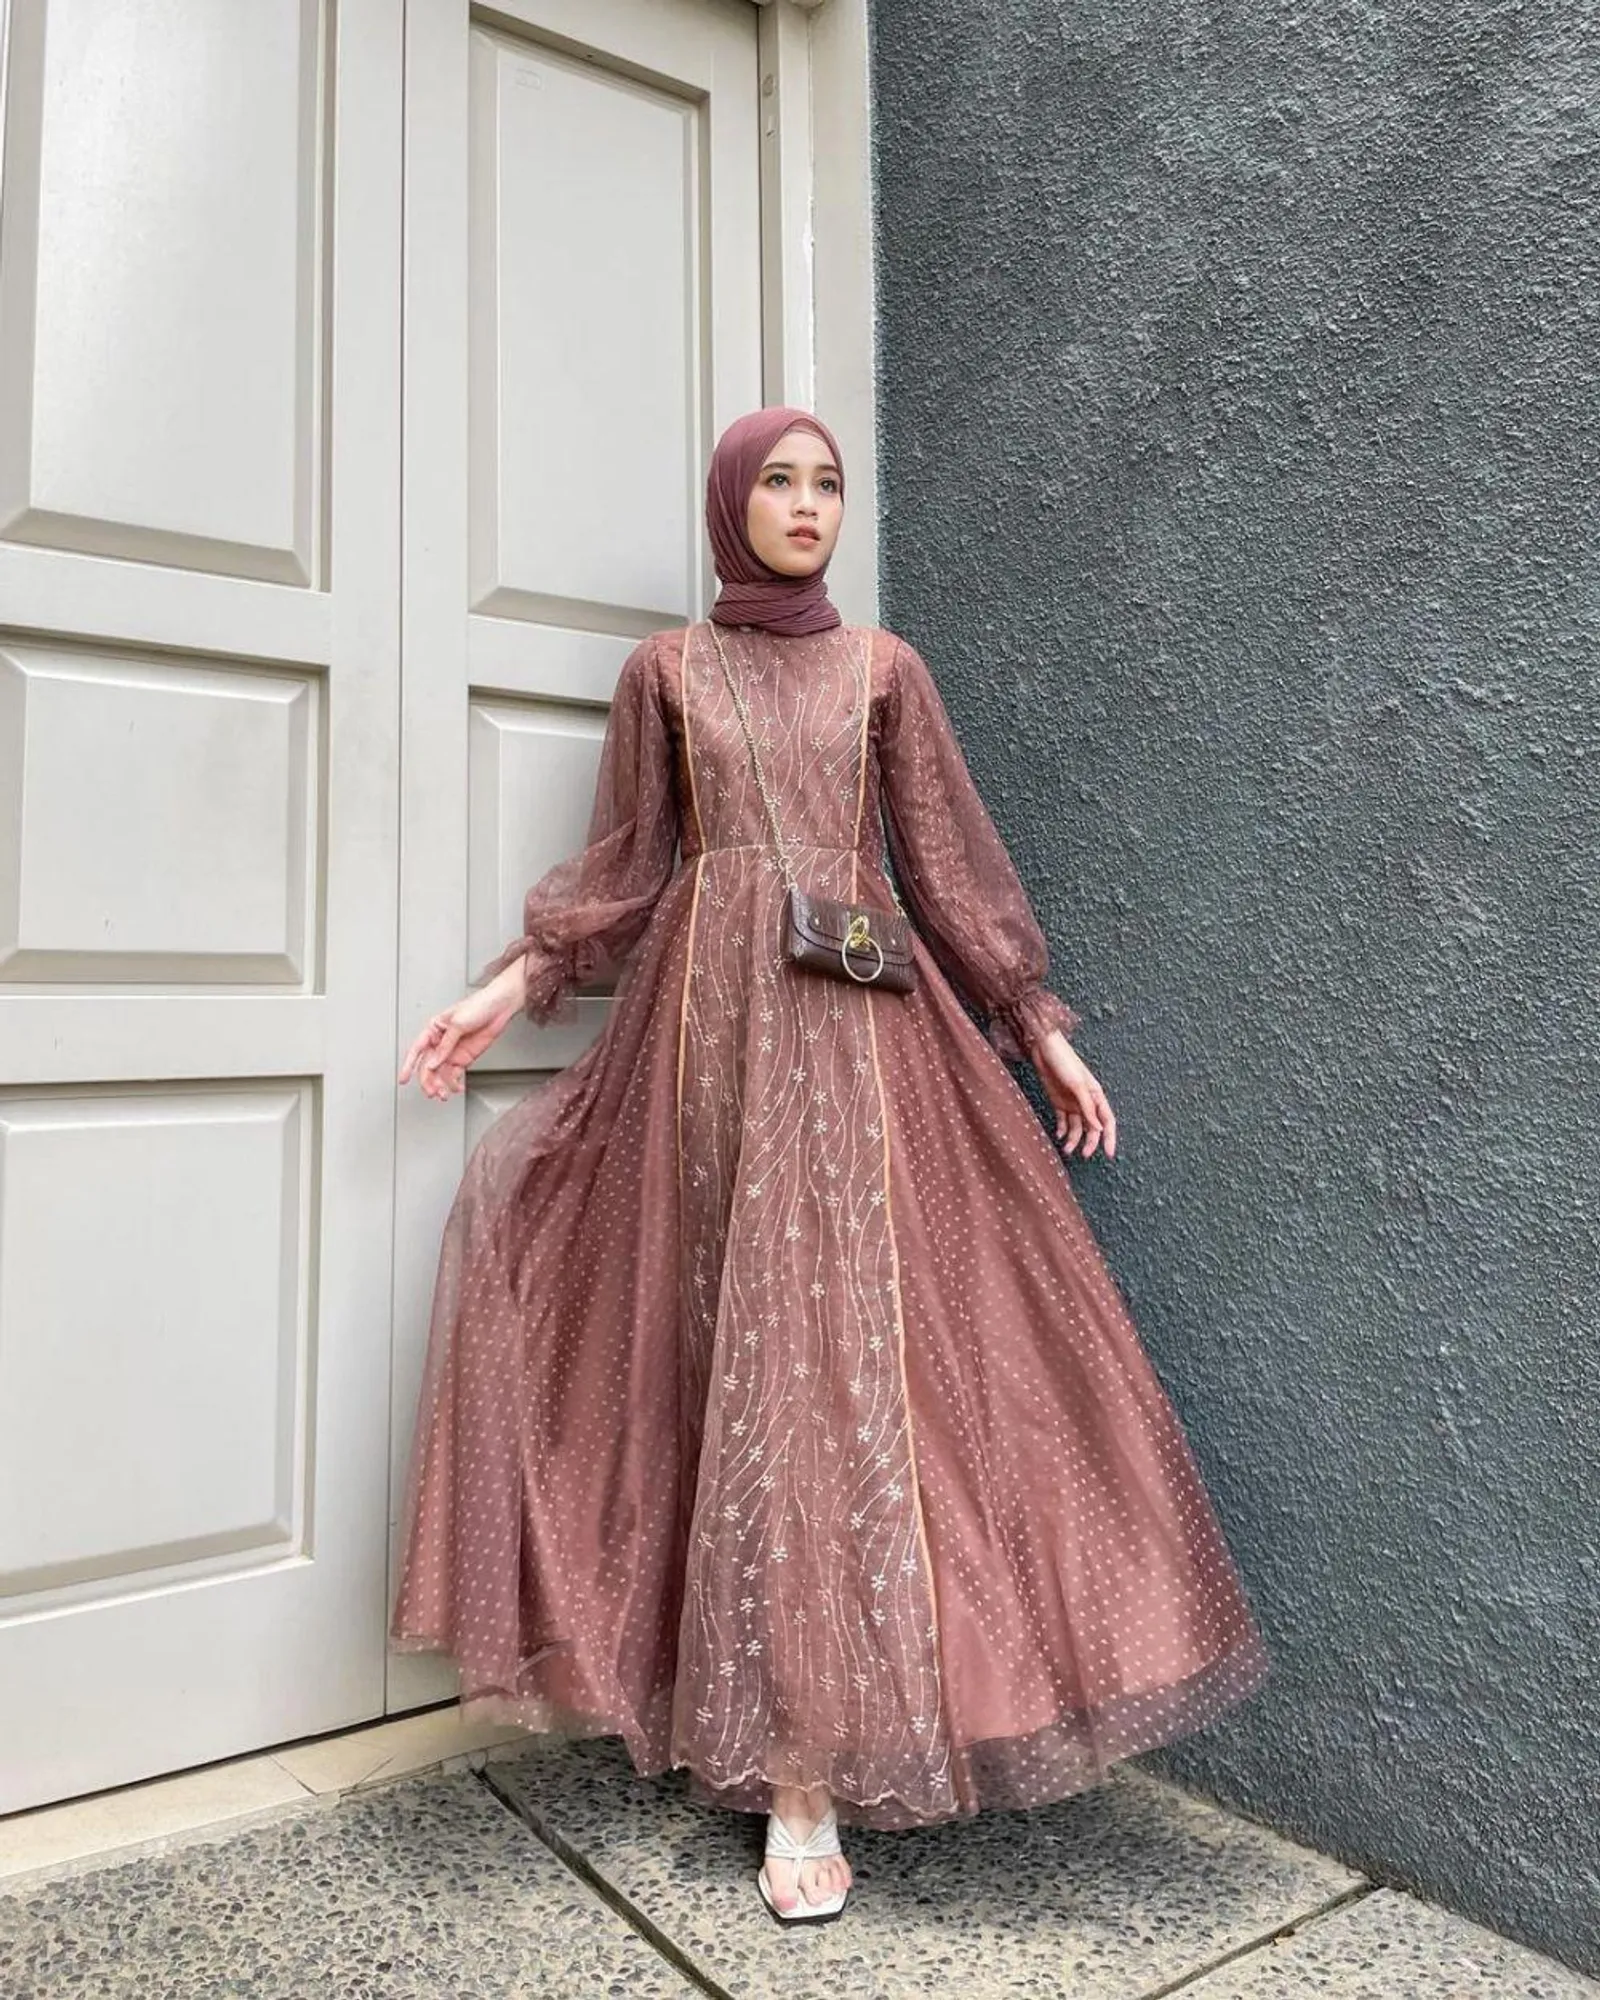 Siap-siap Tampil Manis Pakai Tulle Dress untuk Perempuan Hijab